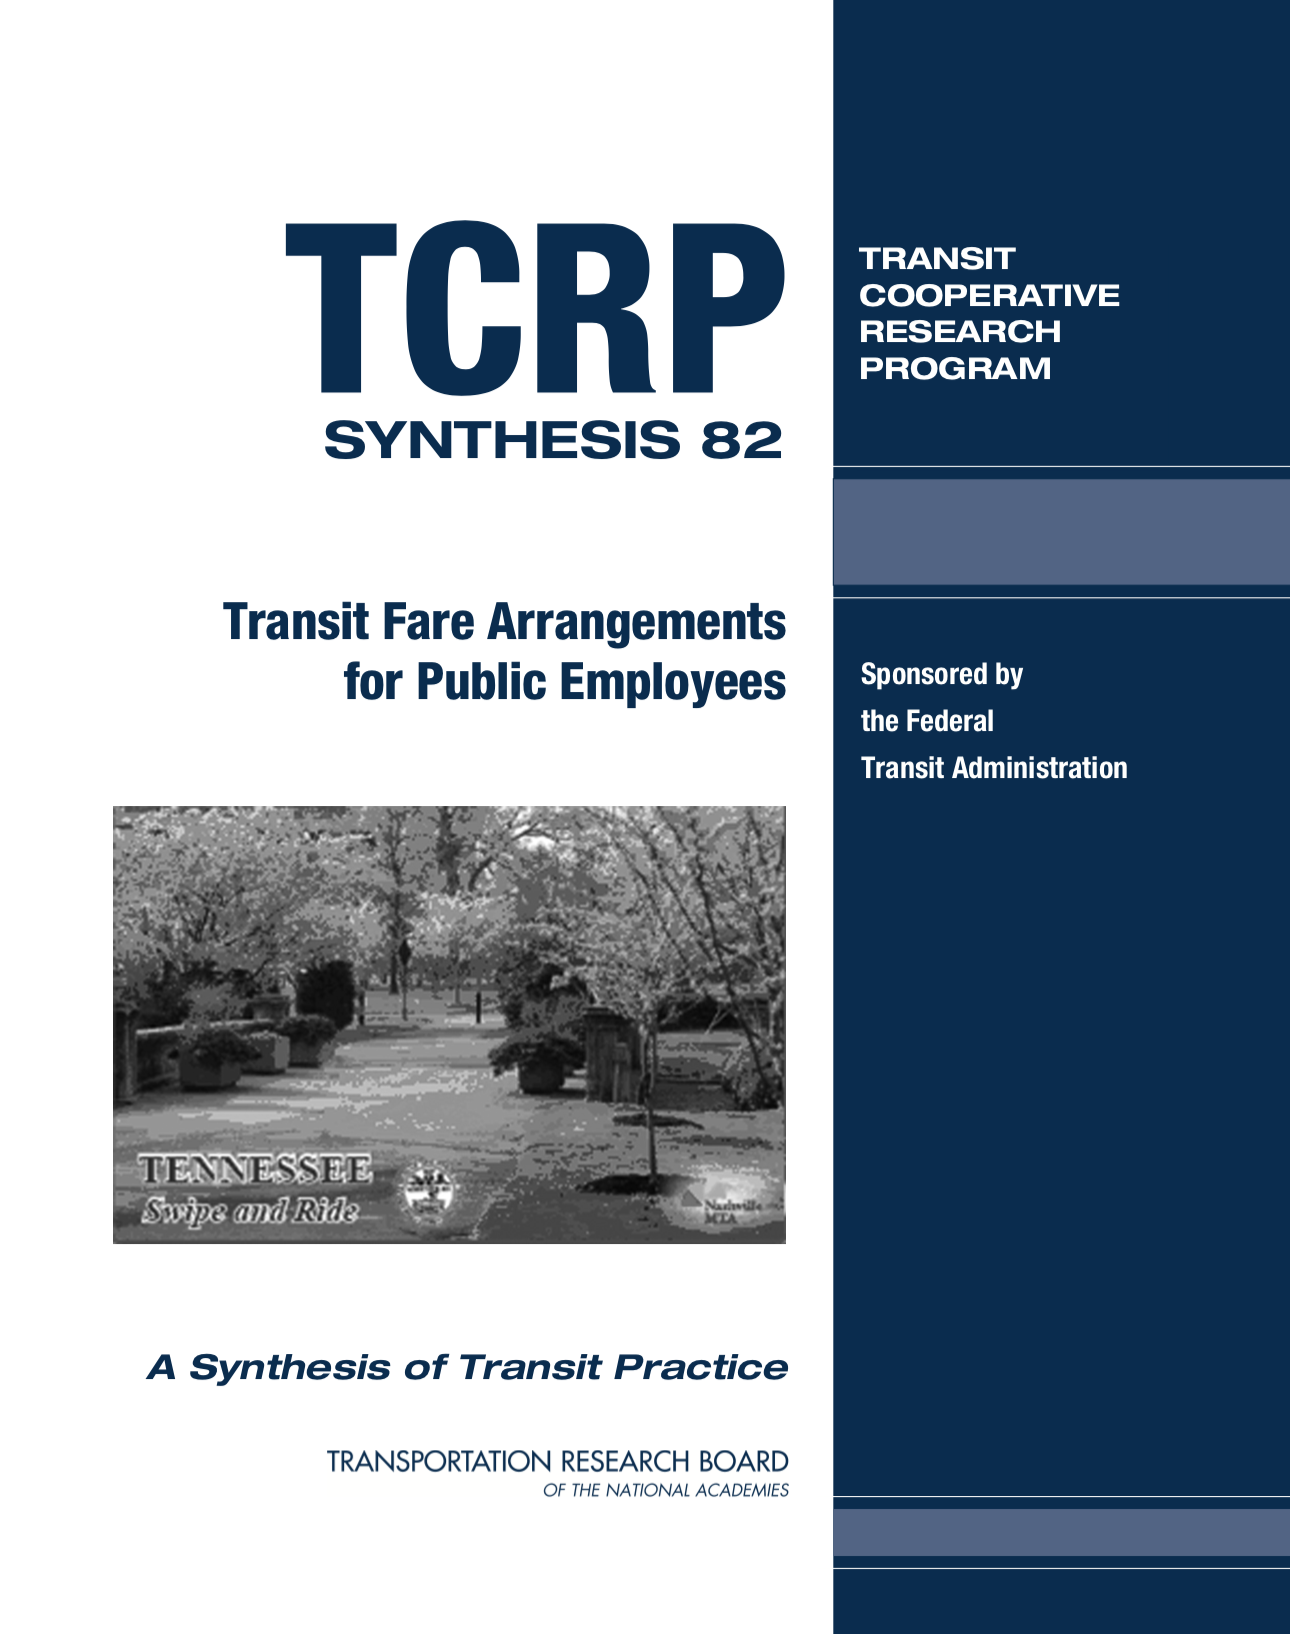 TCRP Synthesis 82: Transit Fare Arrangements for Public Employees [PUB]